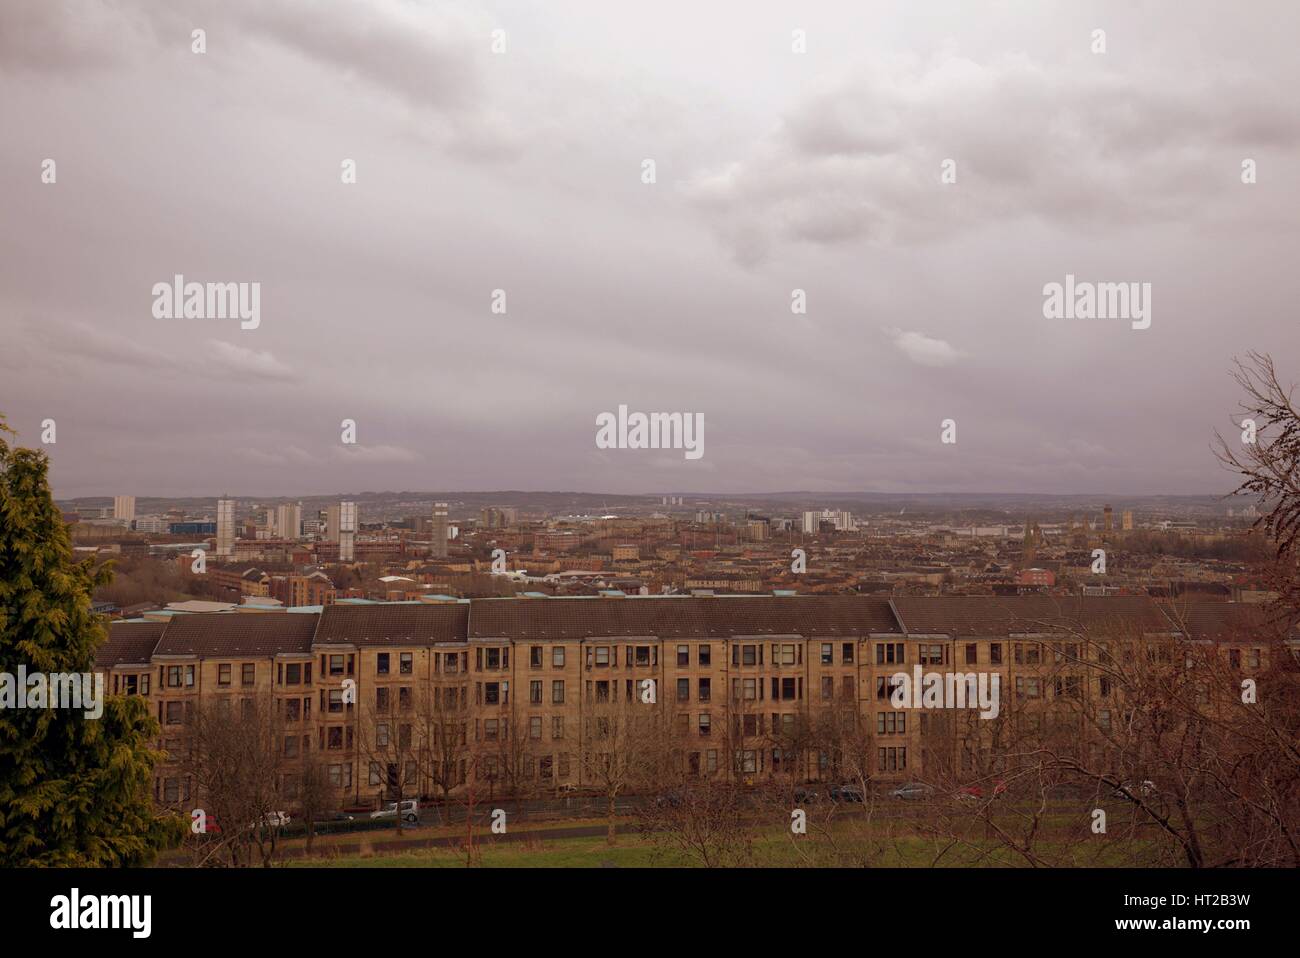 Panorama Stadtansicht Luftaufnahme von Glasgow Süd-west mit Mietskasernen Vordergrund Stockfoto